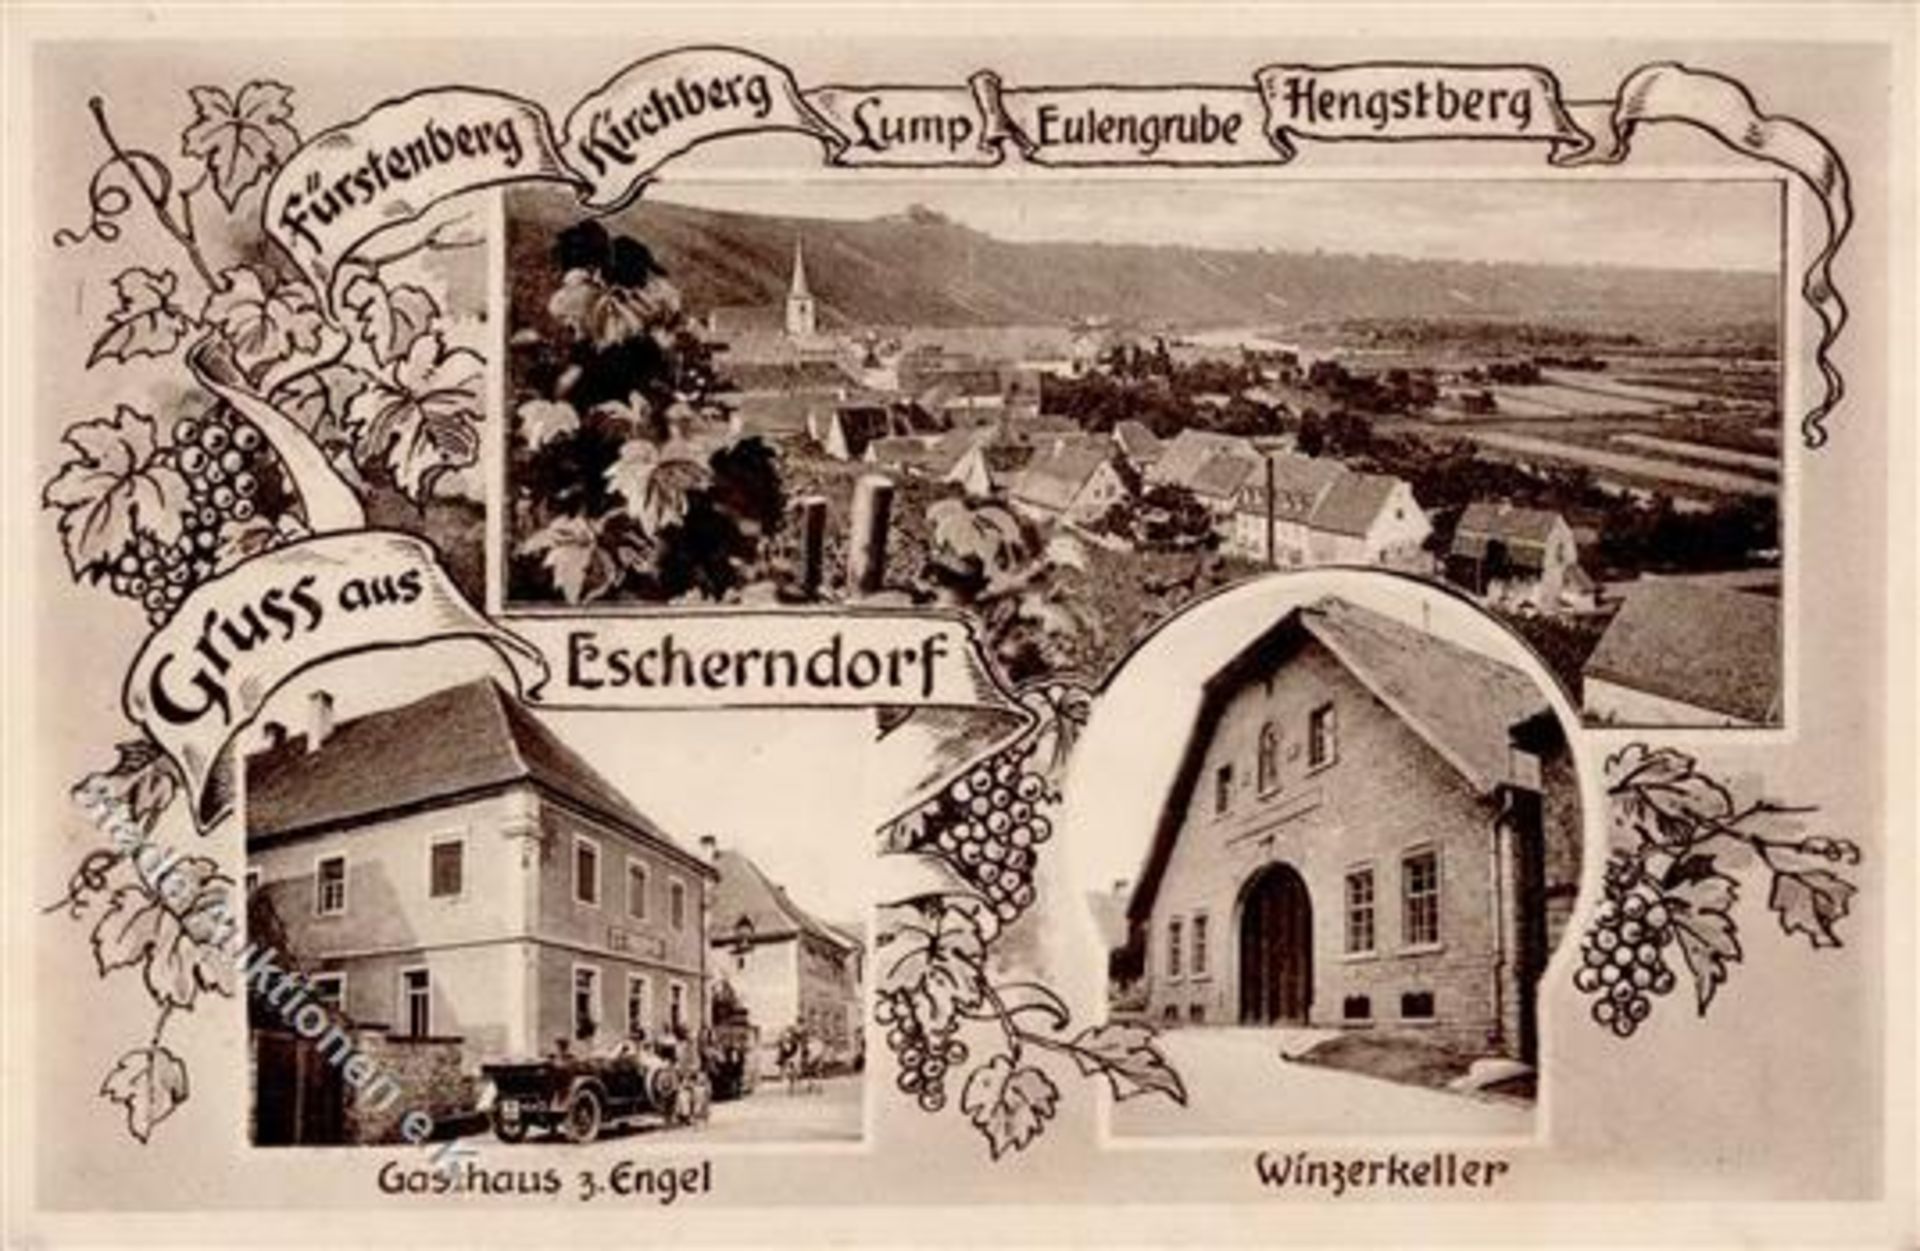 Escherndorf (8712) Gasthaus zum Engel Winzerkeller I-II (Ecken abgestossen)Dieses Los wird in